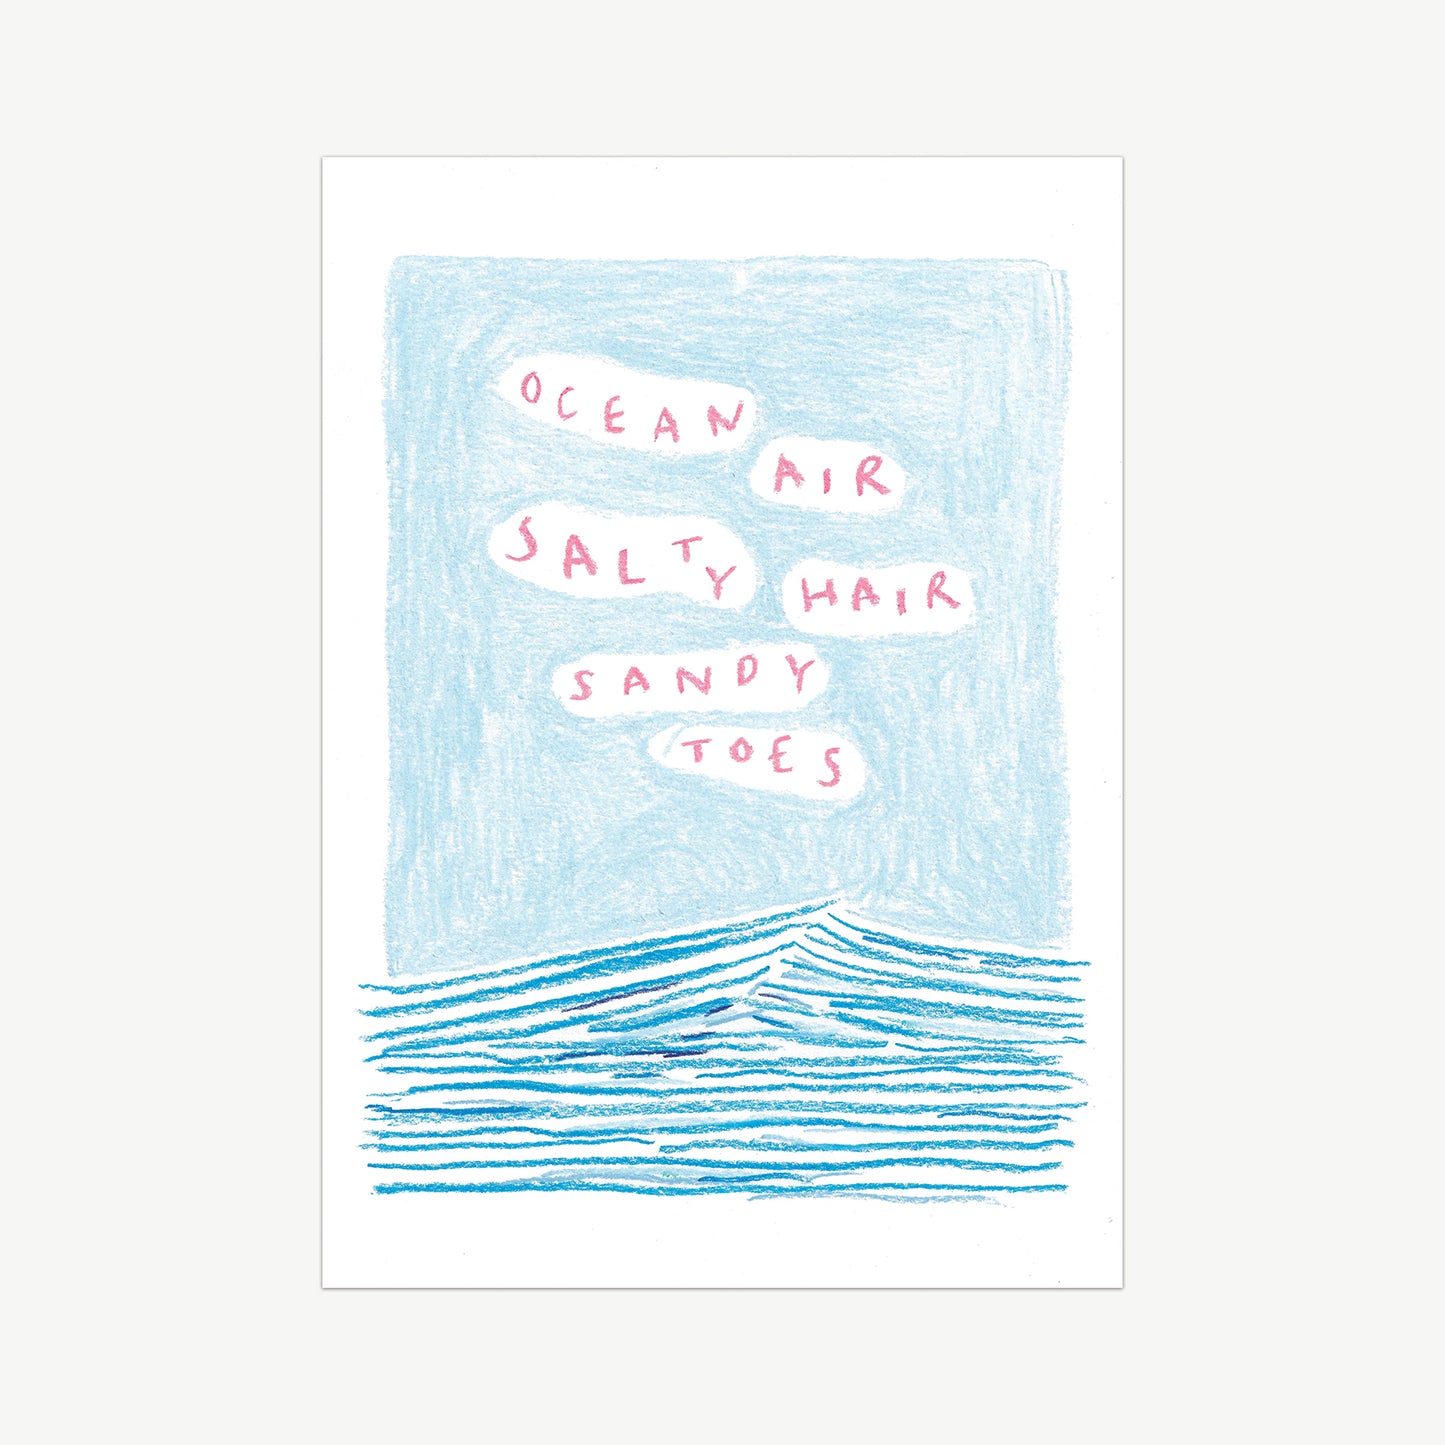 Ocean Air, Salty Hair, Sandy Toes Print